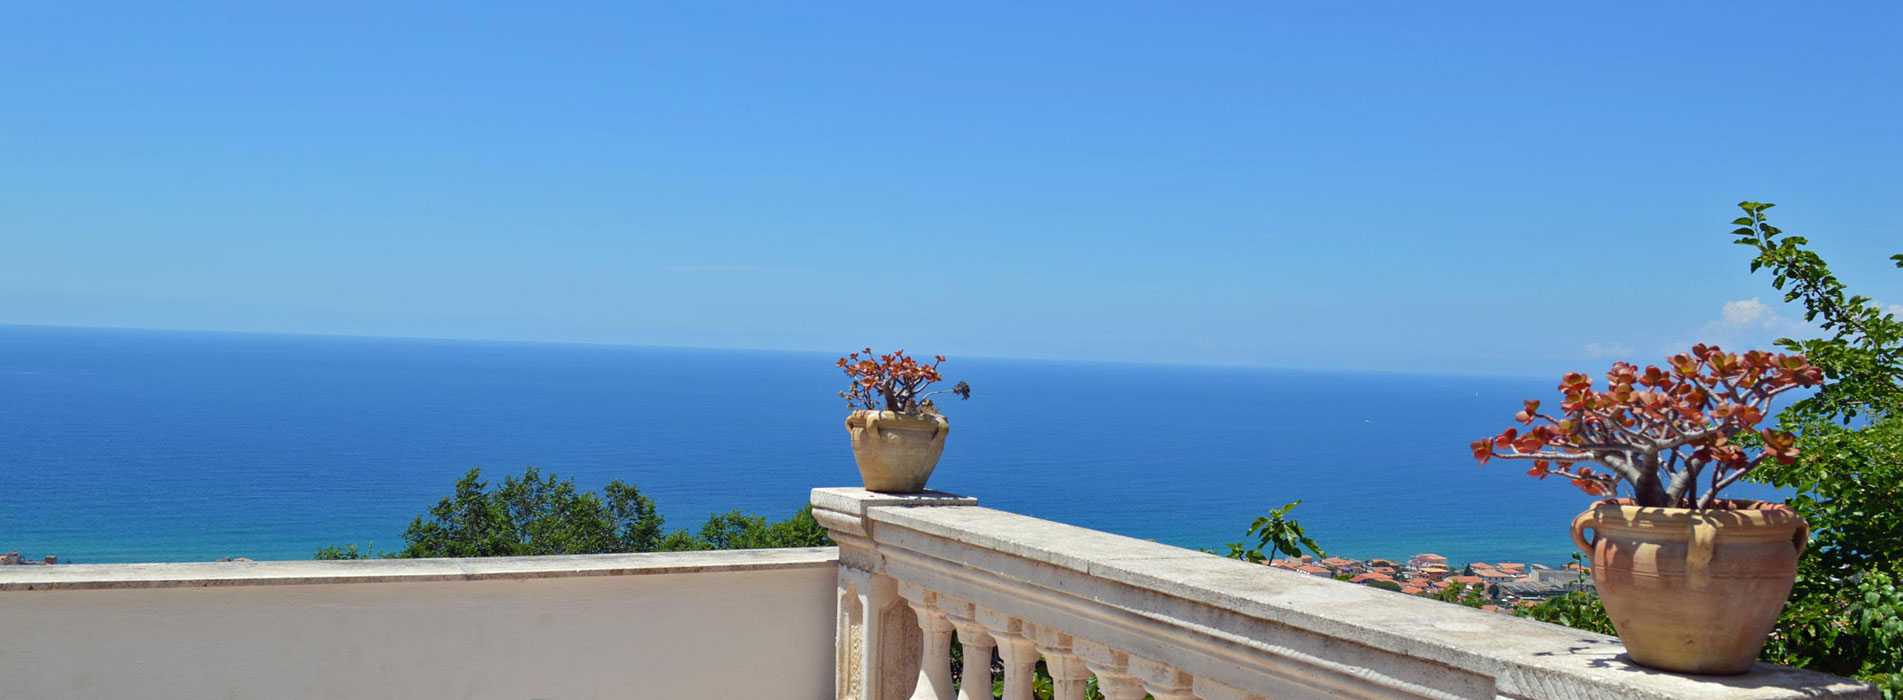 Terrassenblick vom Ferienhaus Casale San Leo an der Cilento Küste